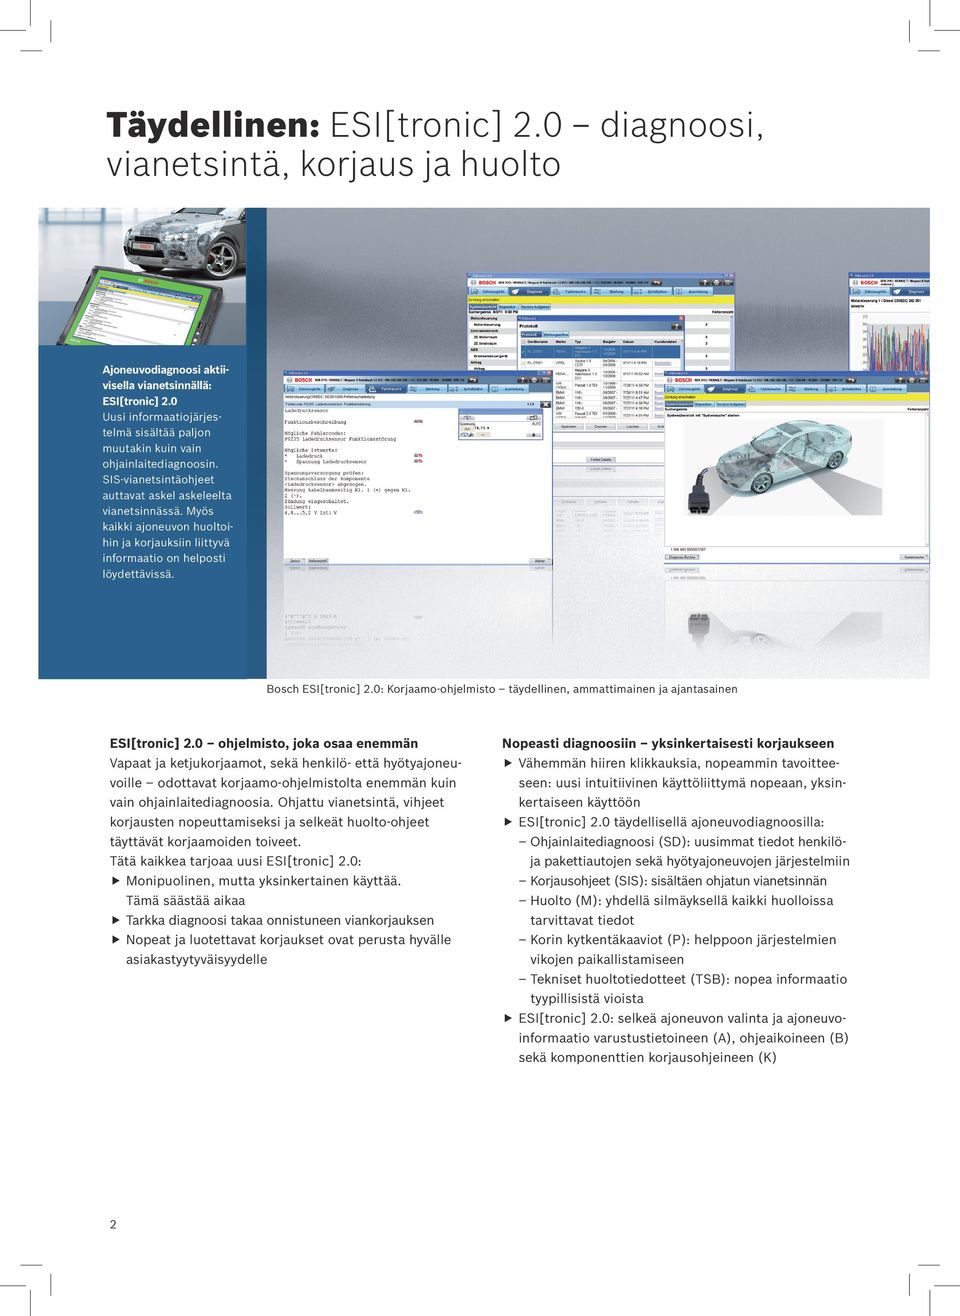 Myös kaikki ajoneuvon huoltoihin ja korjauksiin liittyvä informaatio on helposti löydettävissä. Bosch ESI[tronic] 2.0: Korjaamo-ohjelmisto täydellinen, ammattimainen ja ajantasainen ESI[tronic] 2.